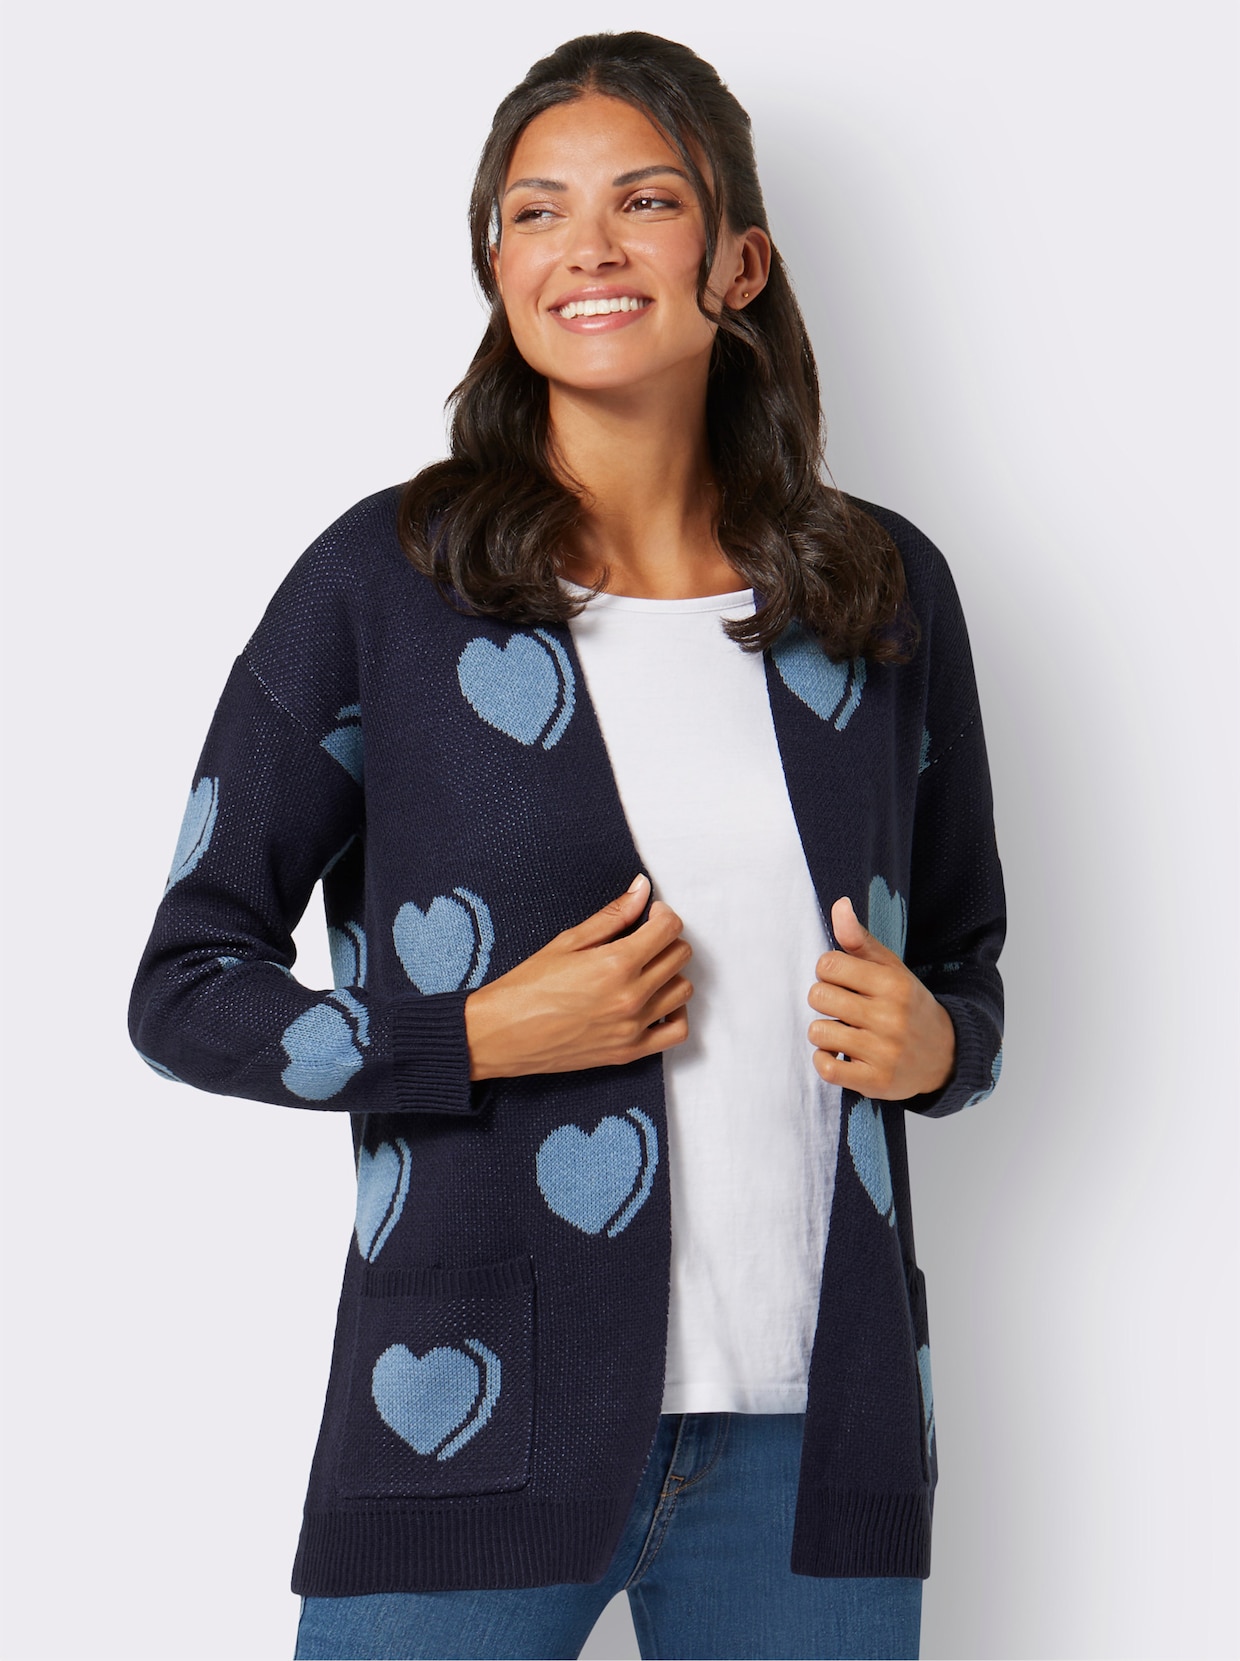 Úpletový kabátik s dlhými rukávmi - Námornícko modro-azúrový vzor